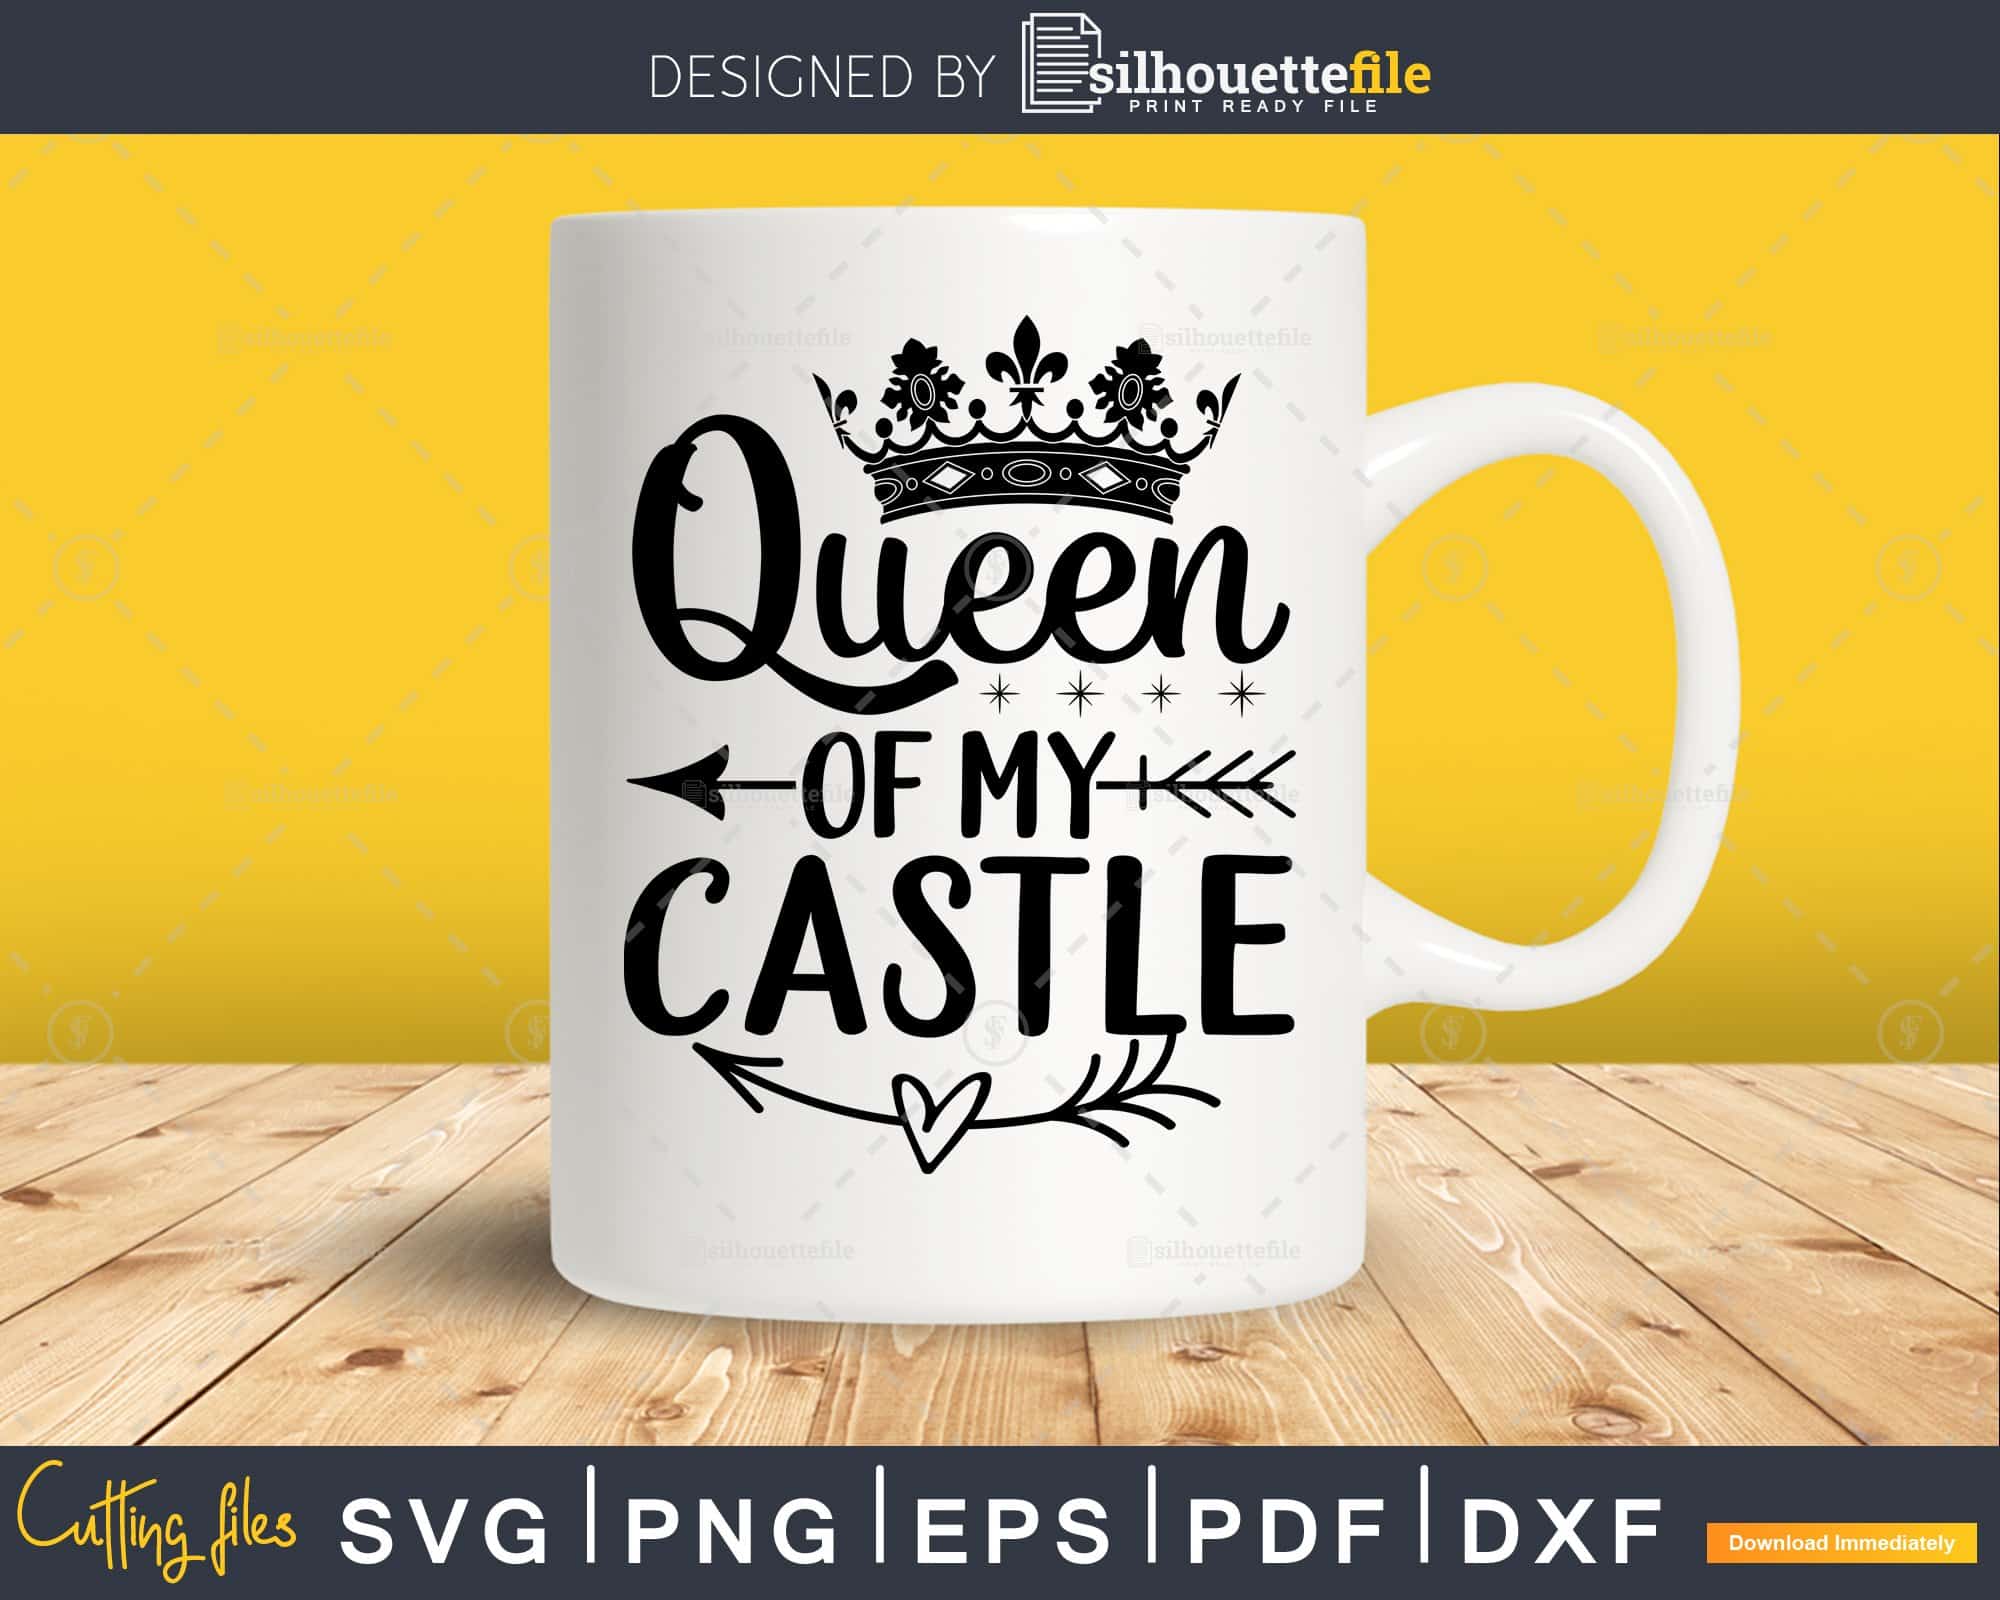 My Queen SVG- Instant Download